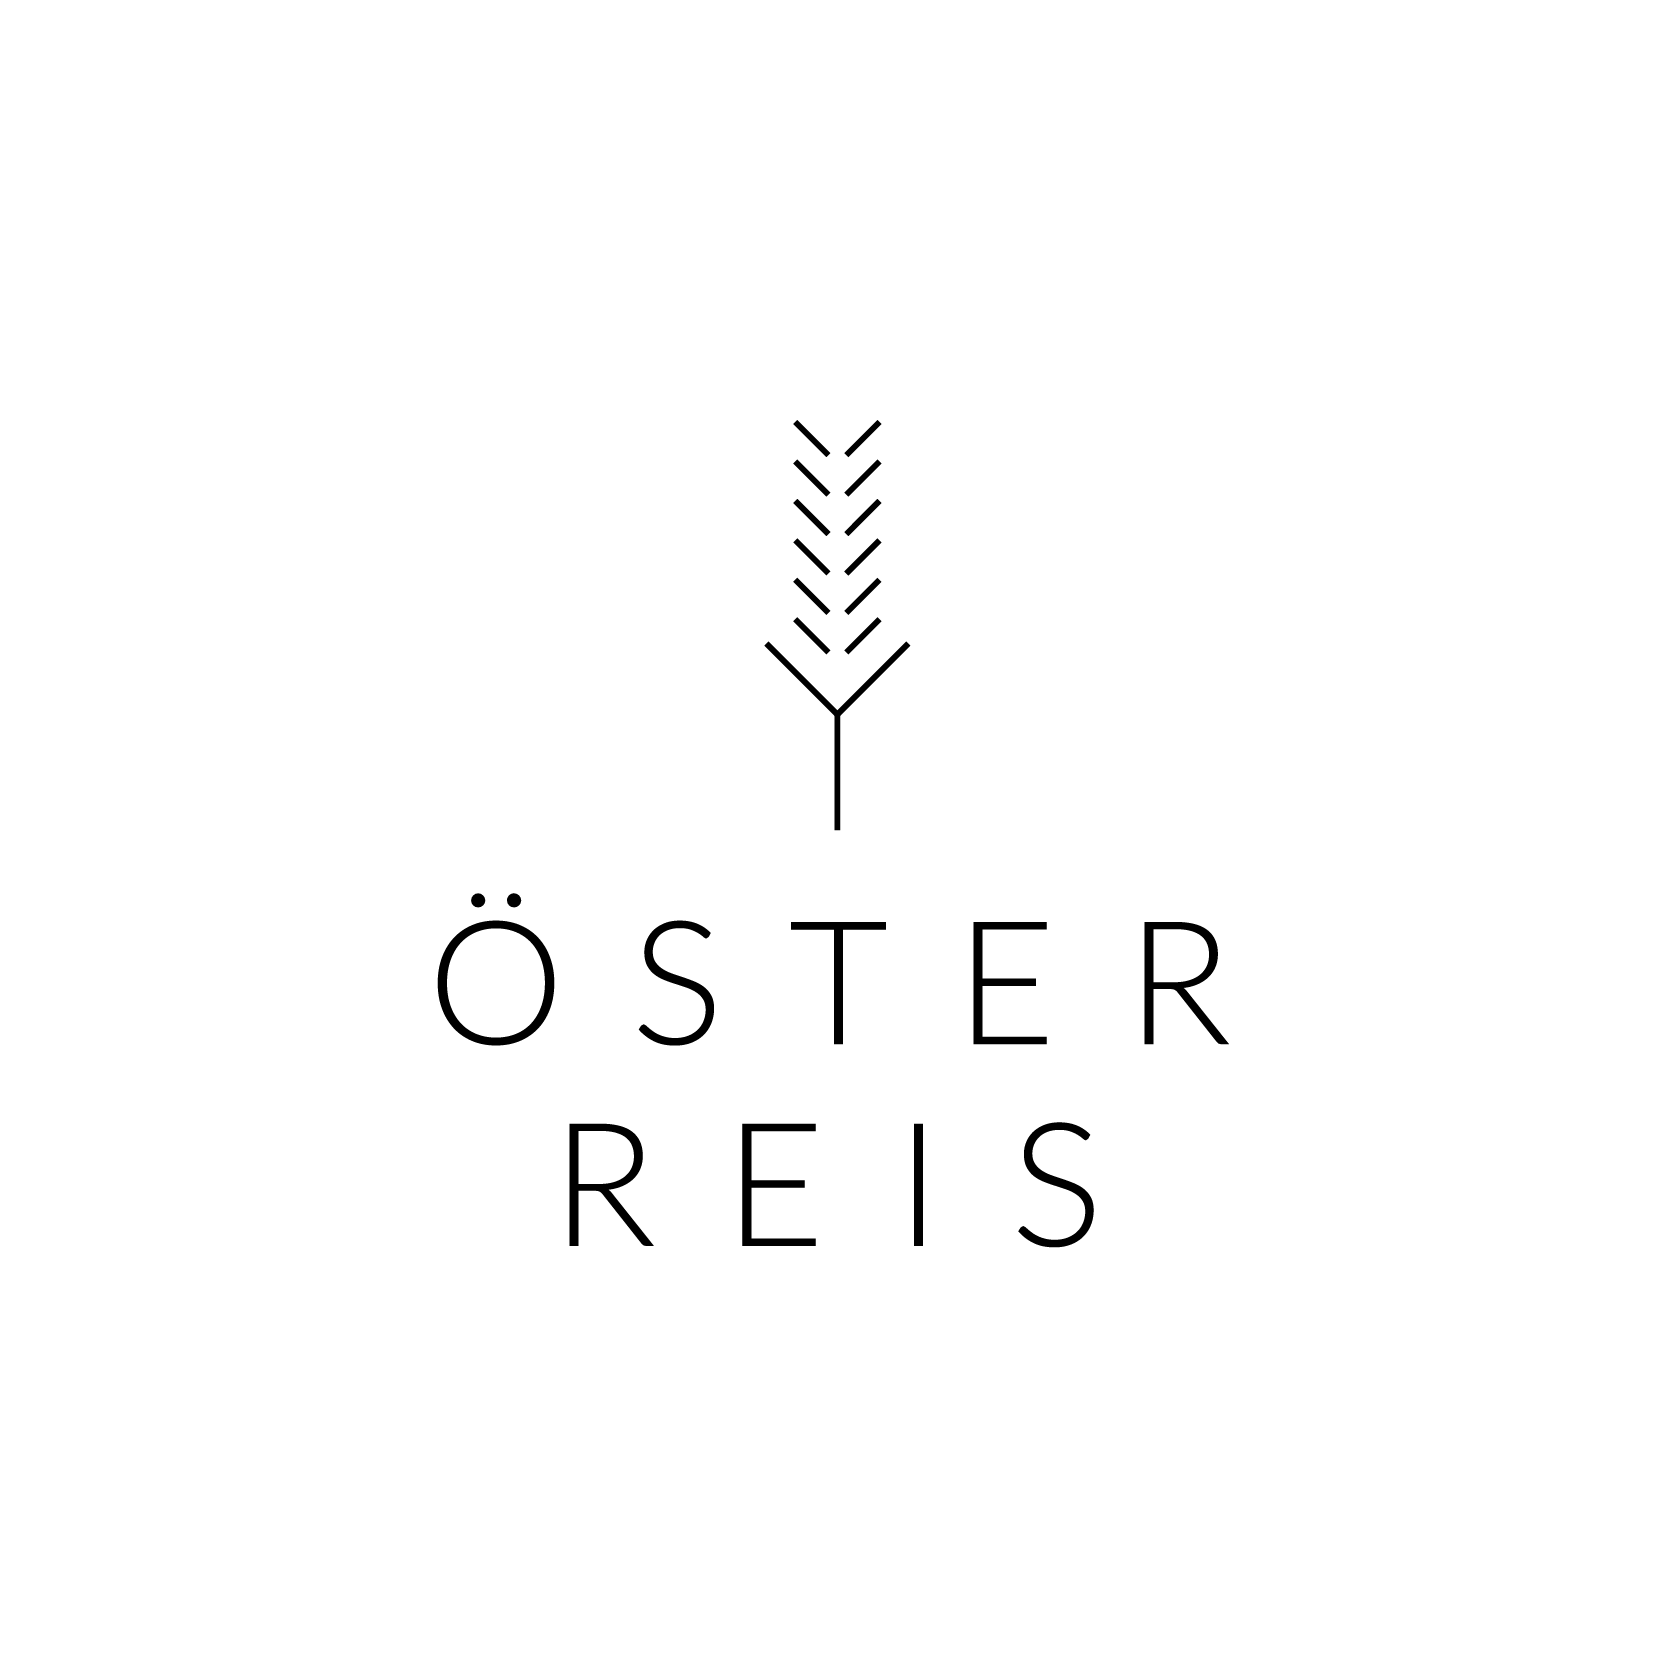 Das Logo von ÖsterReis, schwarz auf weißem Untergrund